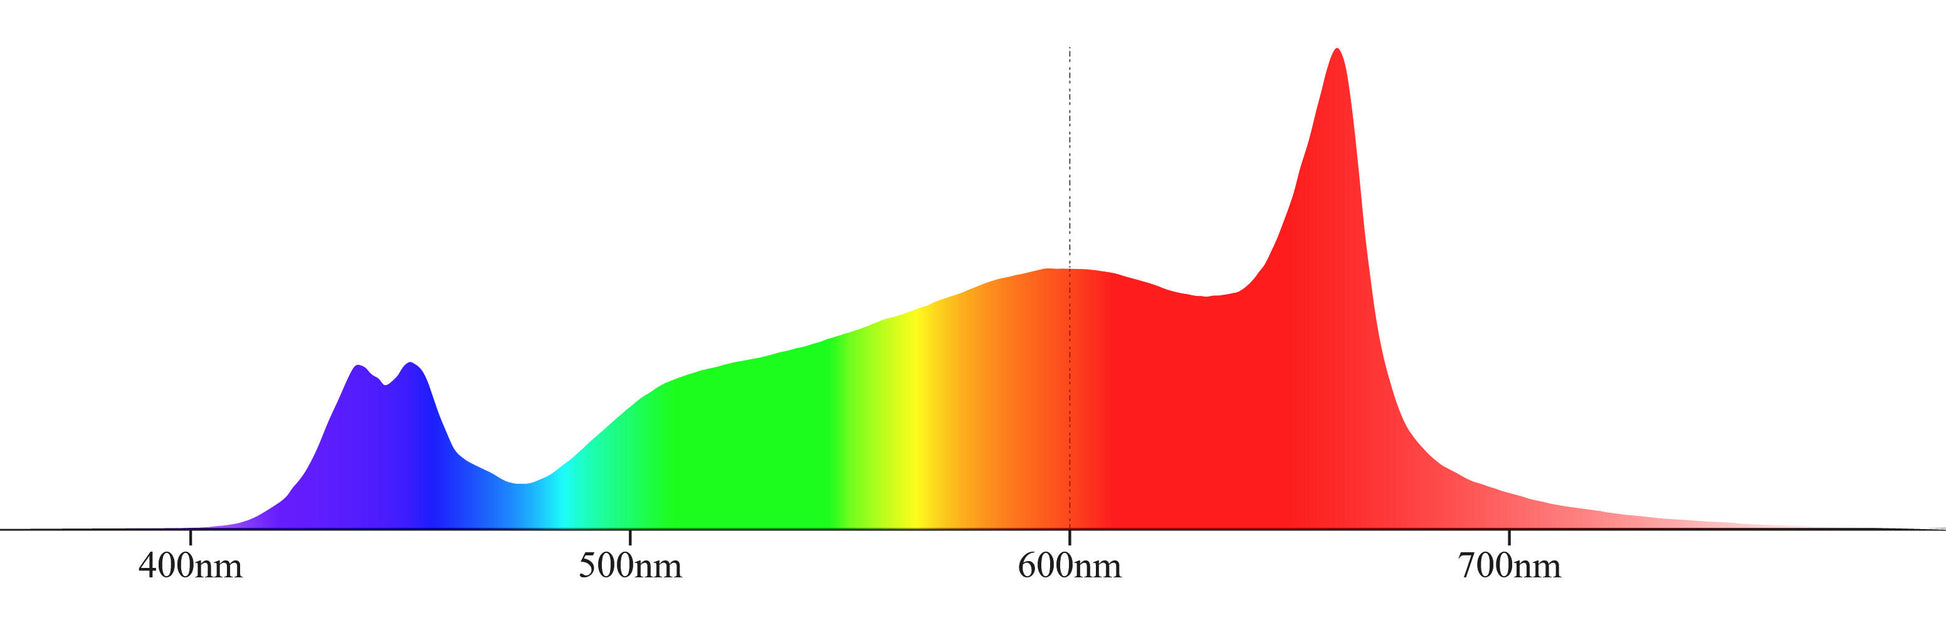 Spektralverteilungsgraph für Crescience Wingman 600 LED Grow Light, zeigt Wellenlängenbereiche.